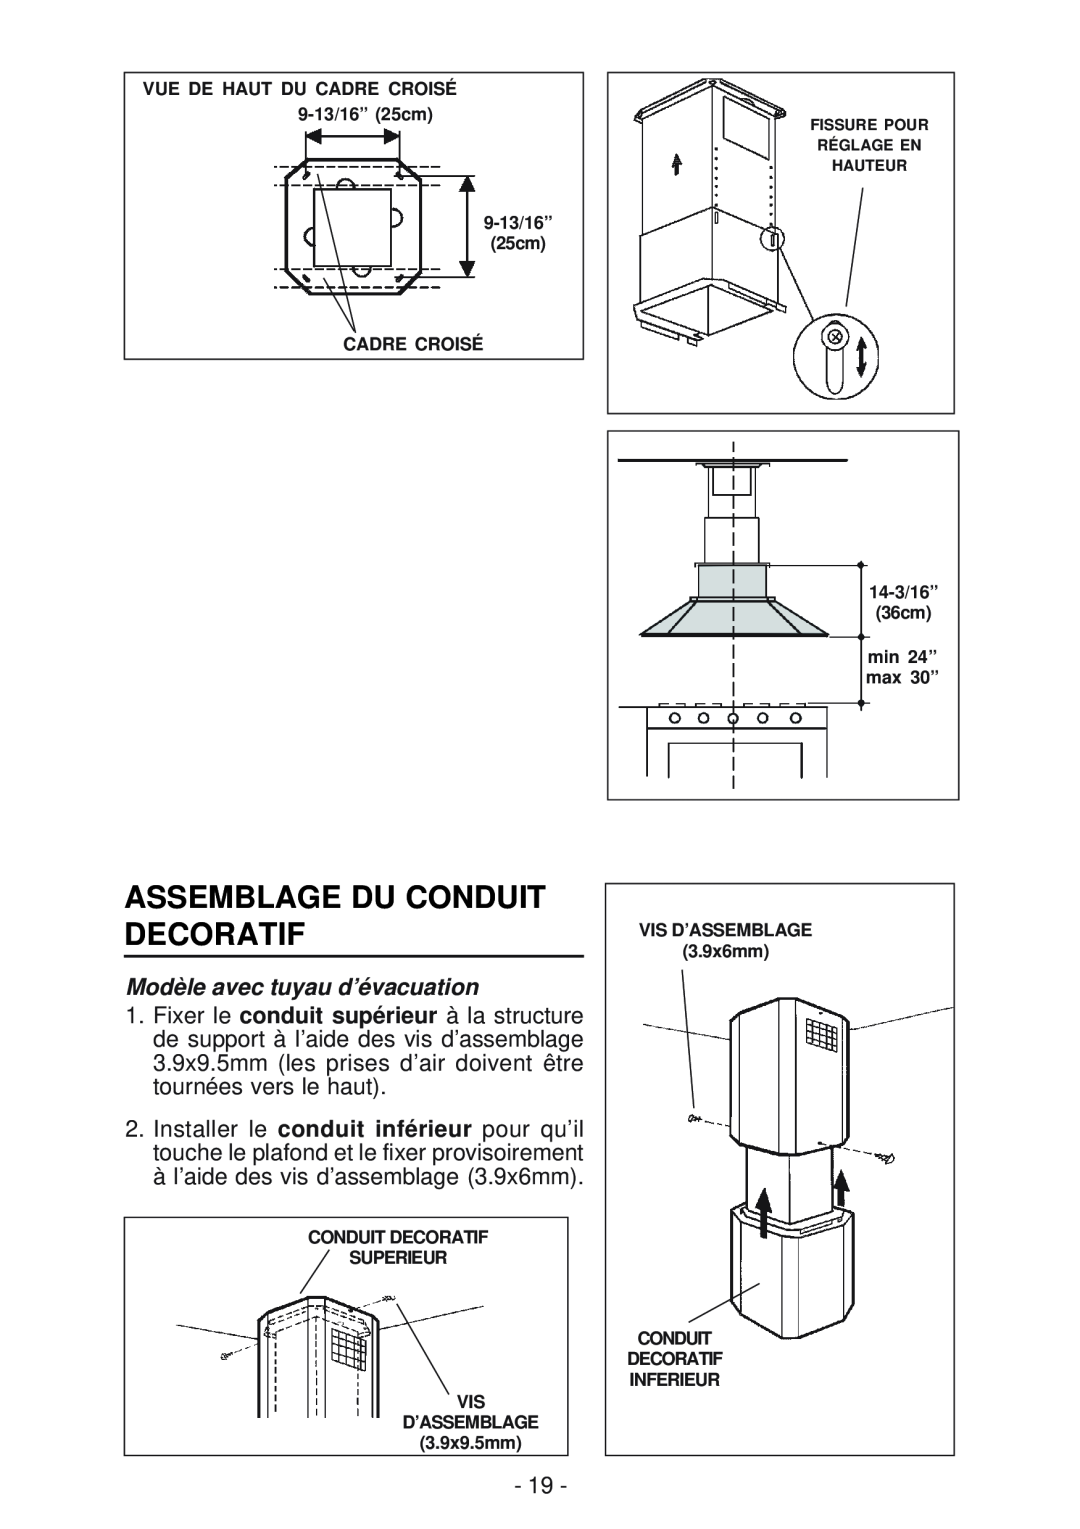 Best IS170 manual Assemblage Du Conduit Decoratif, Modèle avec tuyau d’évacuation, 25cm CADRE CROISÉ, 3.9x9.5mm 